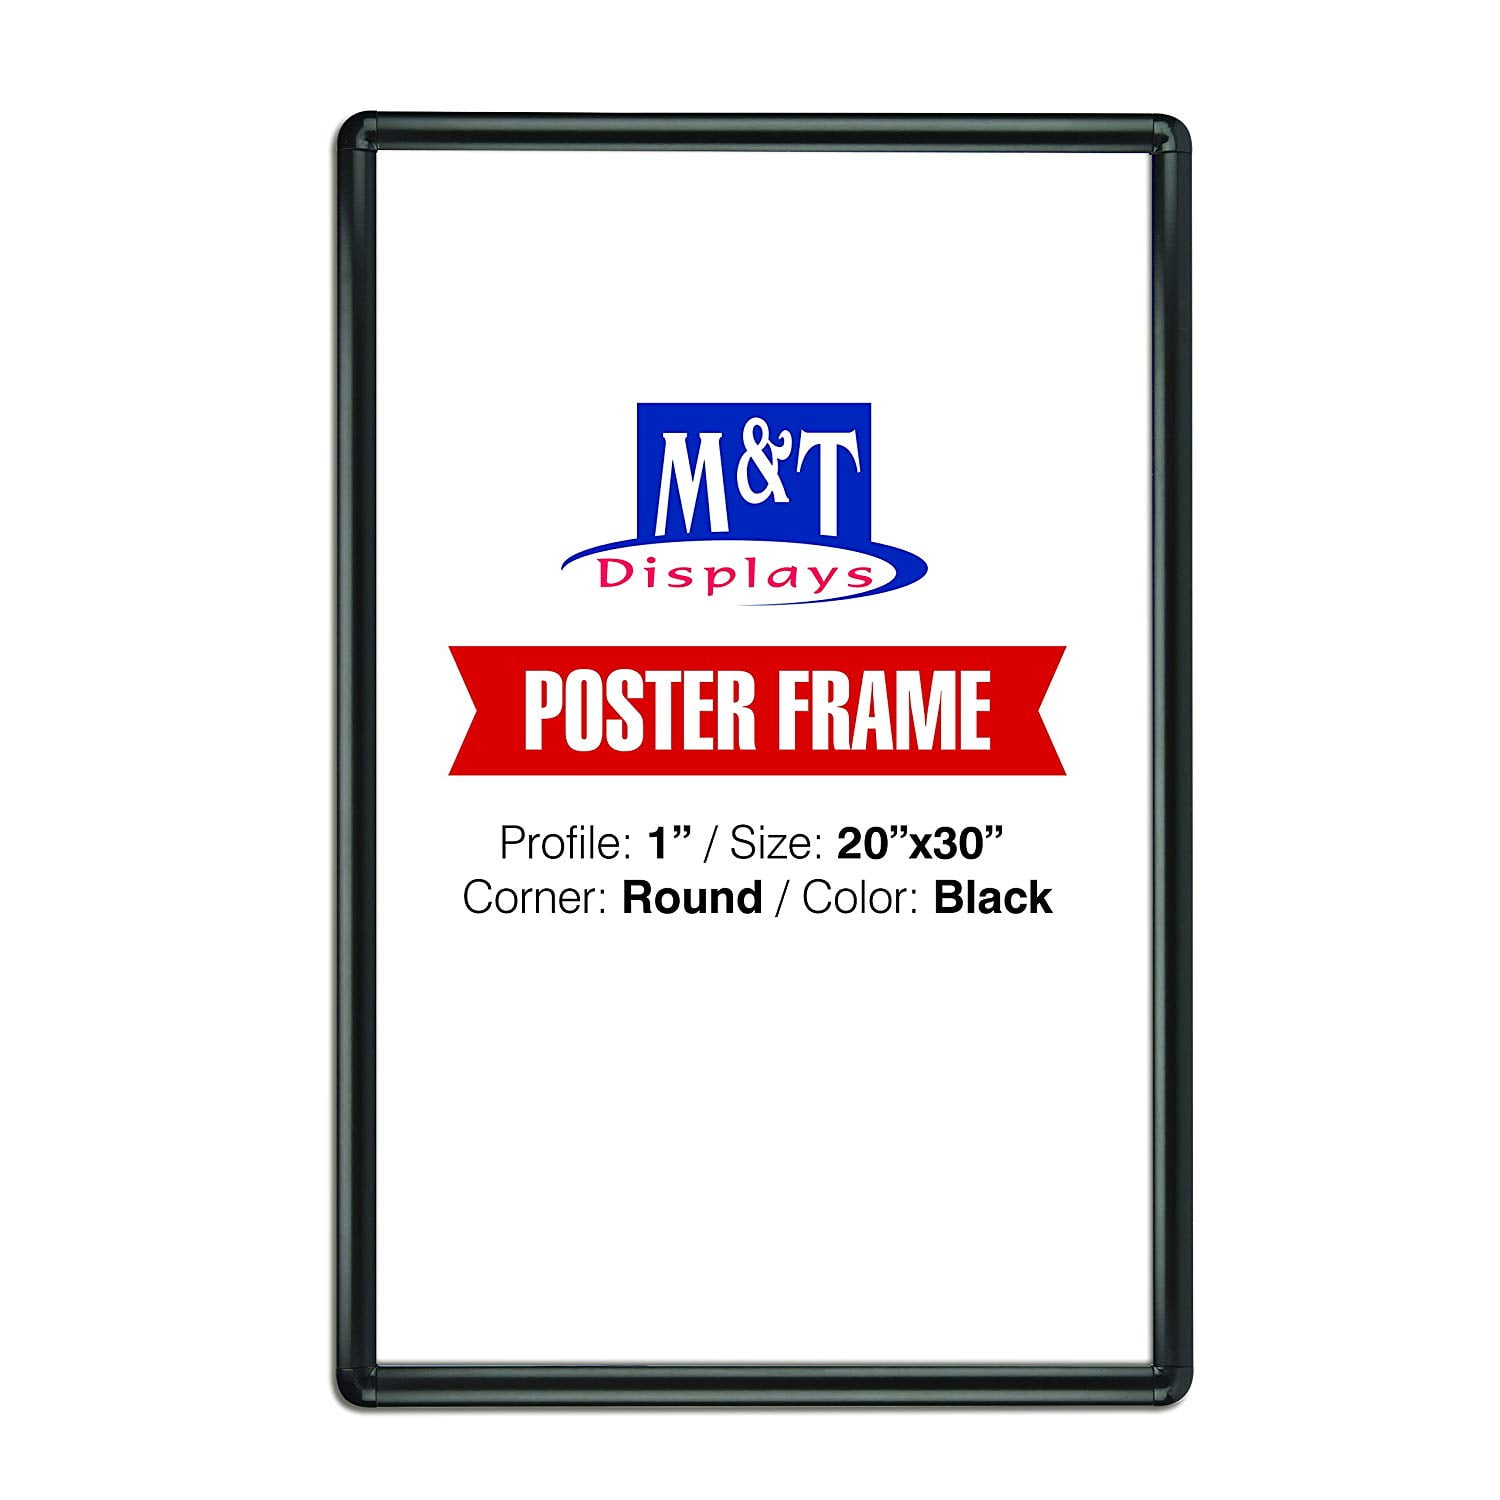 M&T Displays Snap Frame 27X40 Poster Size 1" Black Color Profile Mitered Corner 